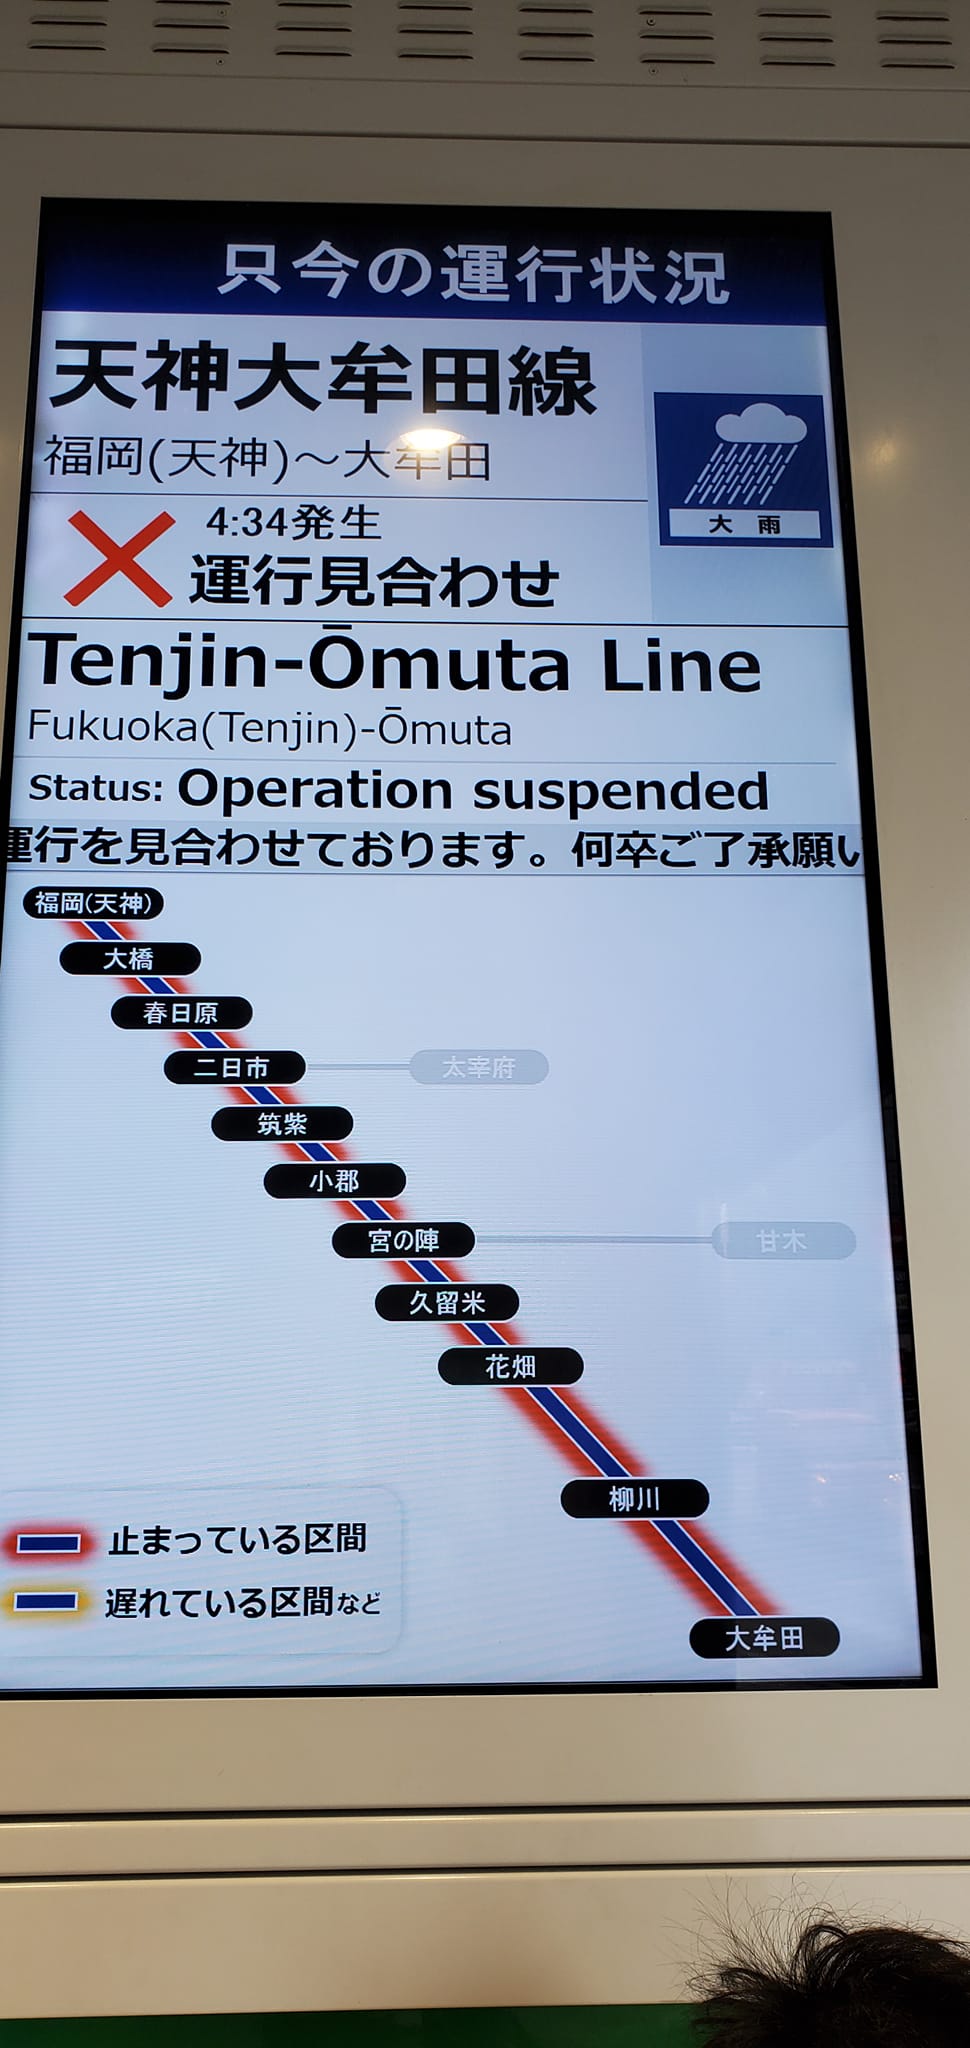 当地大部份列车服务亦受影响需要停驶。网上图片